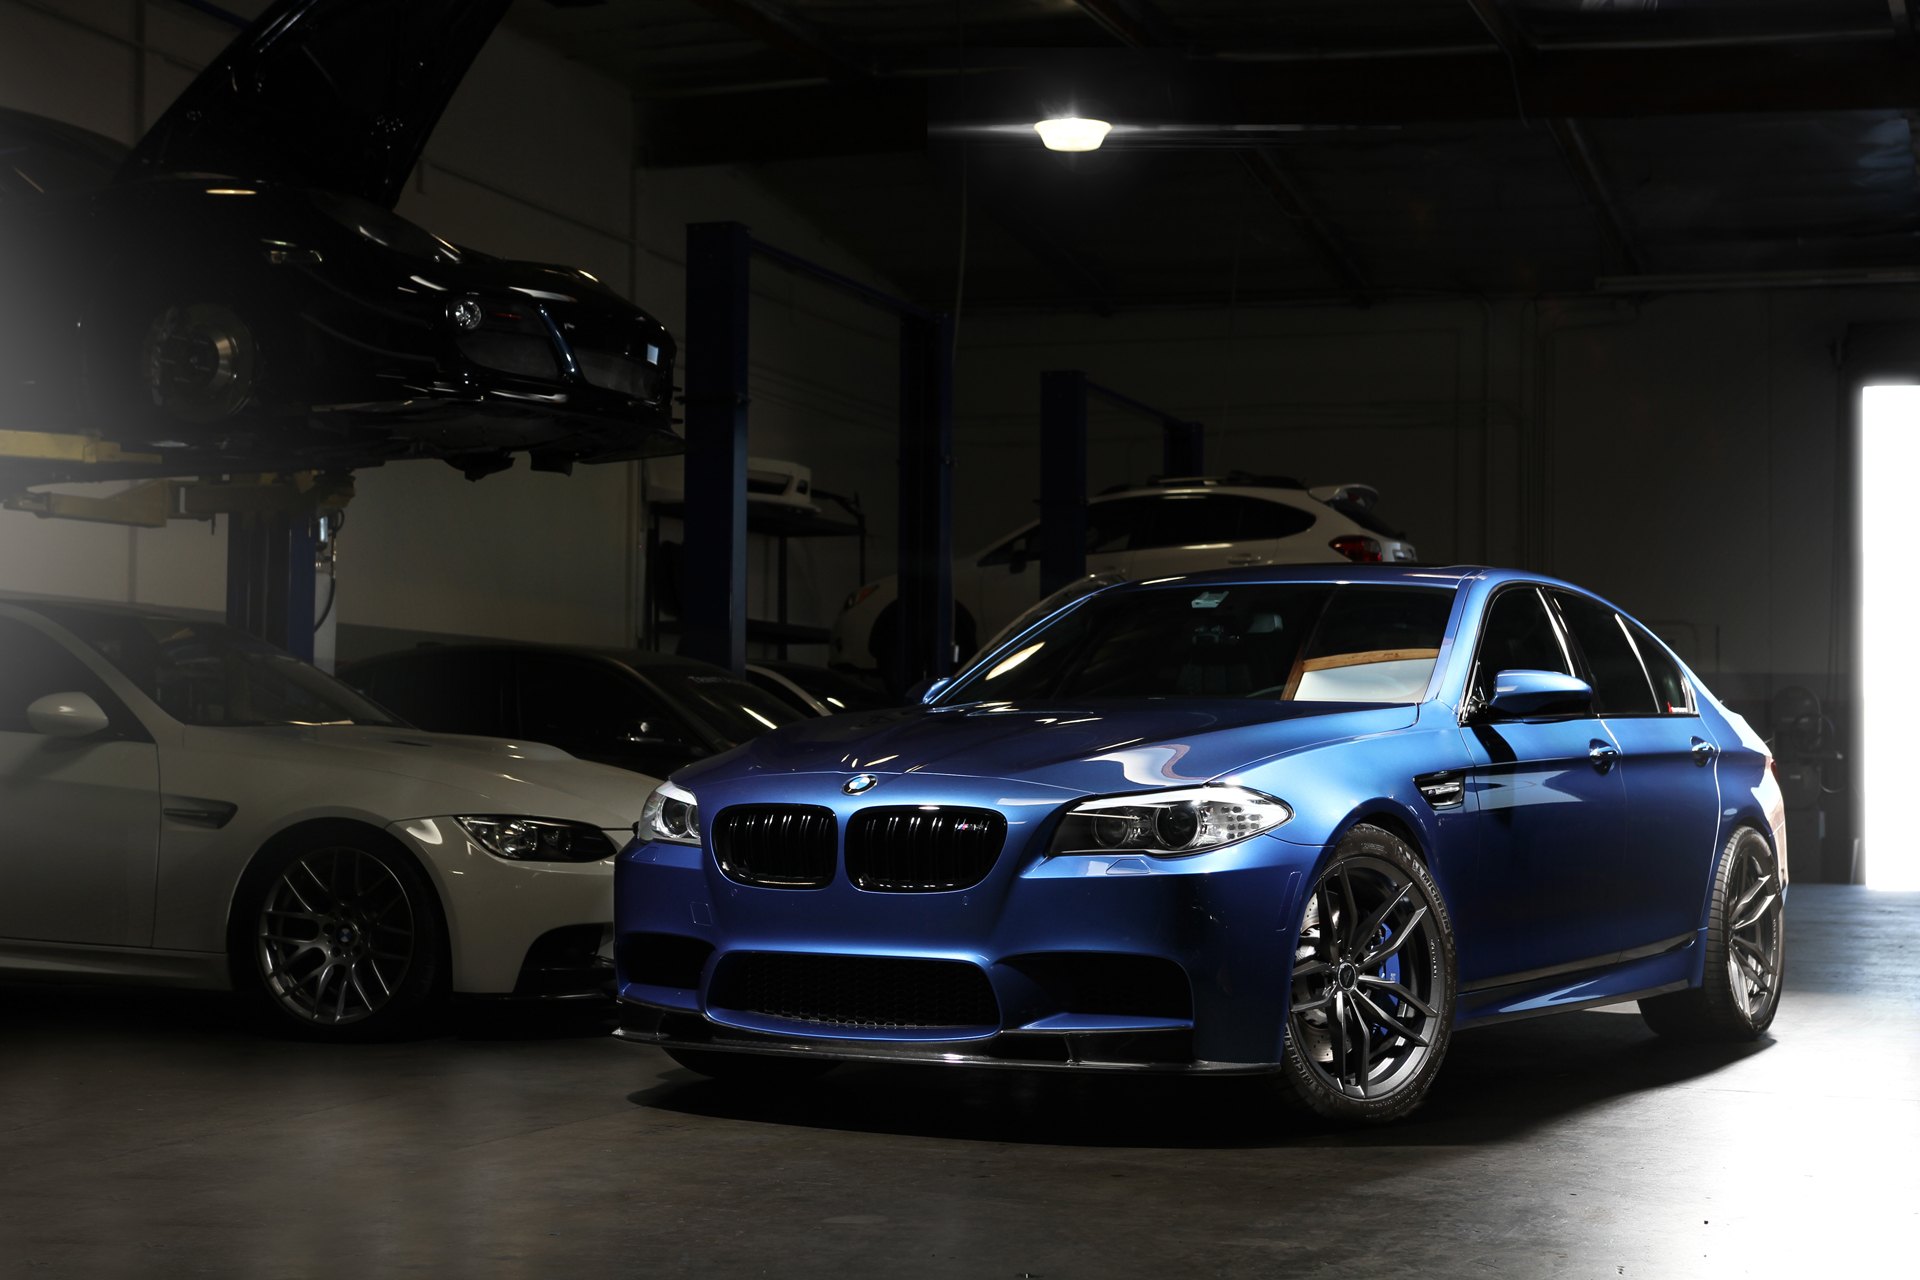 Dark Smoke Halo Headlights on Blue BMW 5-Series - Photo by Vorstiner